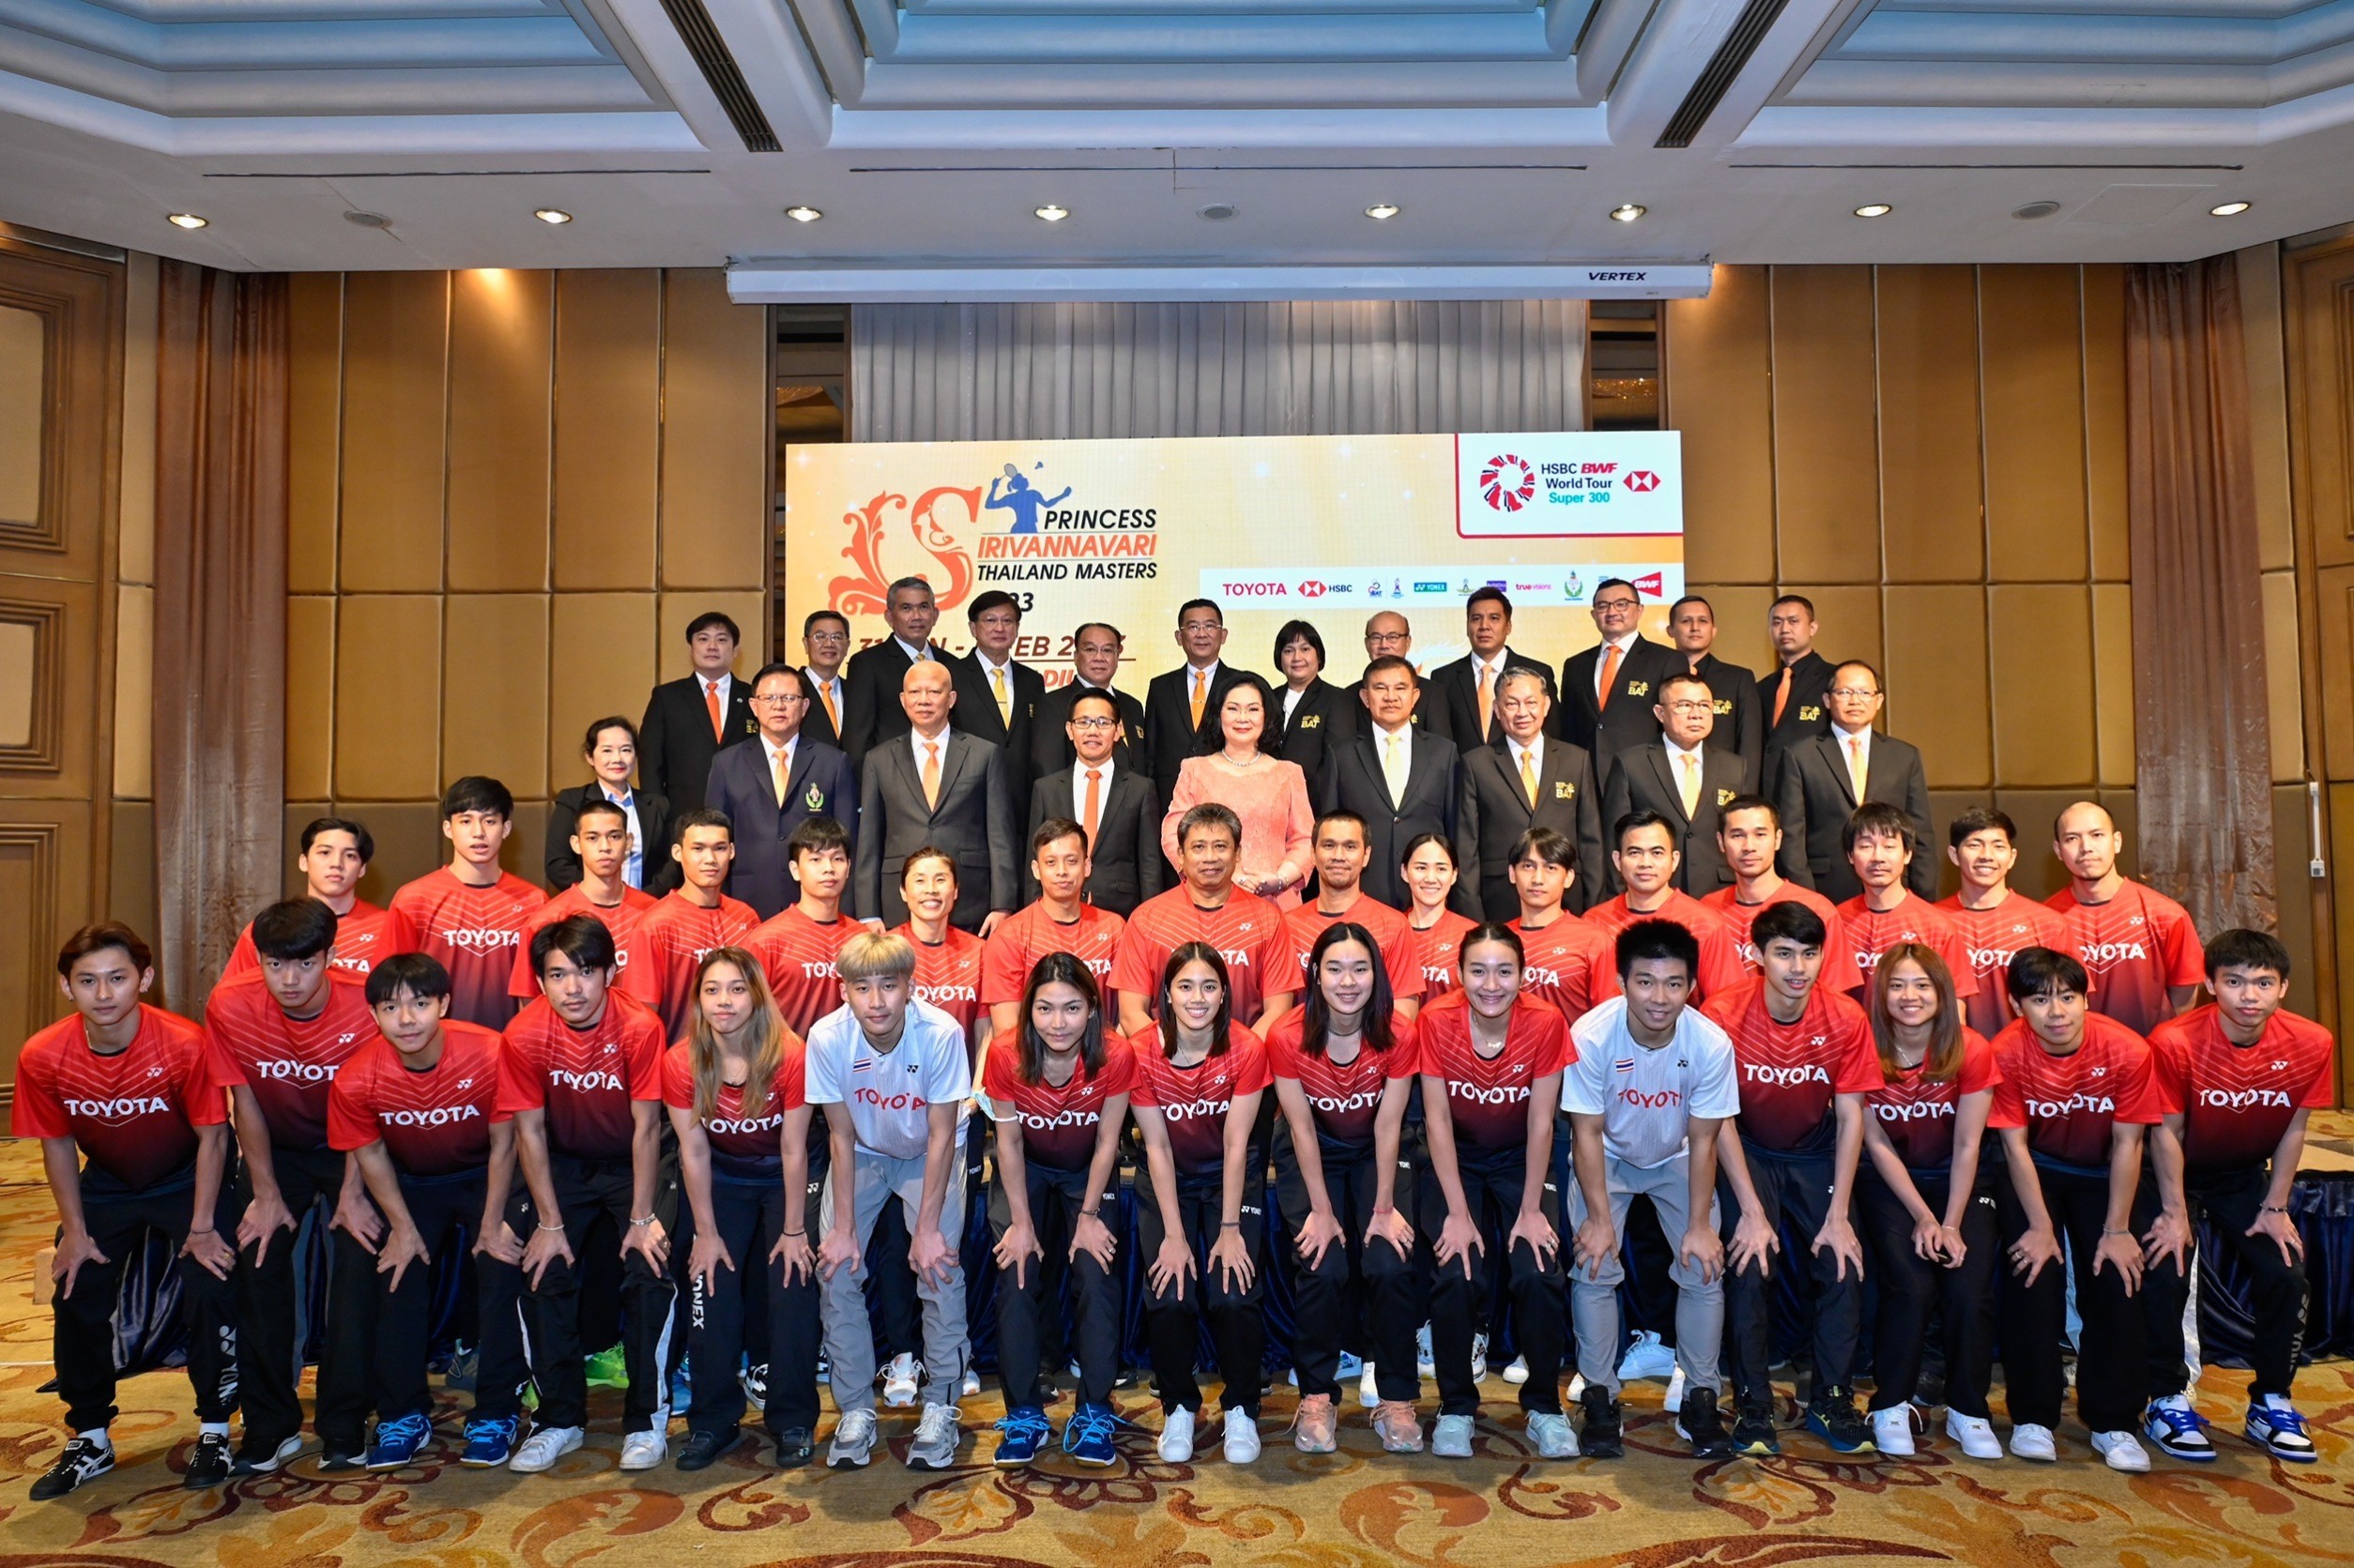 สมาคมกีฬาแบดมินตันแห่งประเทศไทยฯ ประกาศความพร้อมในการจัด การแข่งขันแบดมินตัน Princess Sirivannavari Thailand Masters 2023